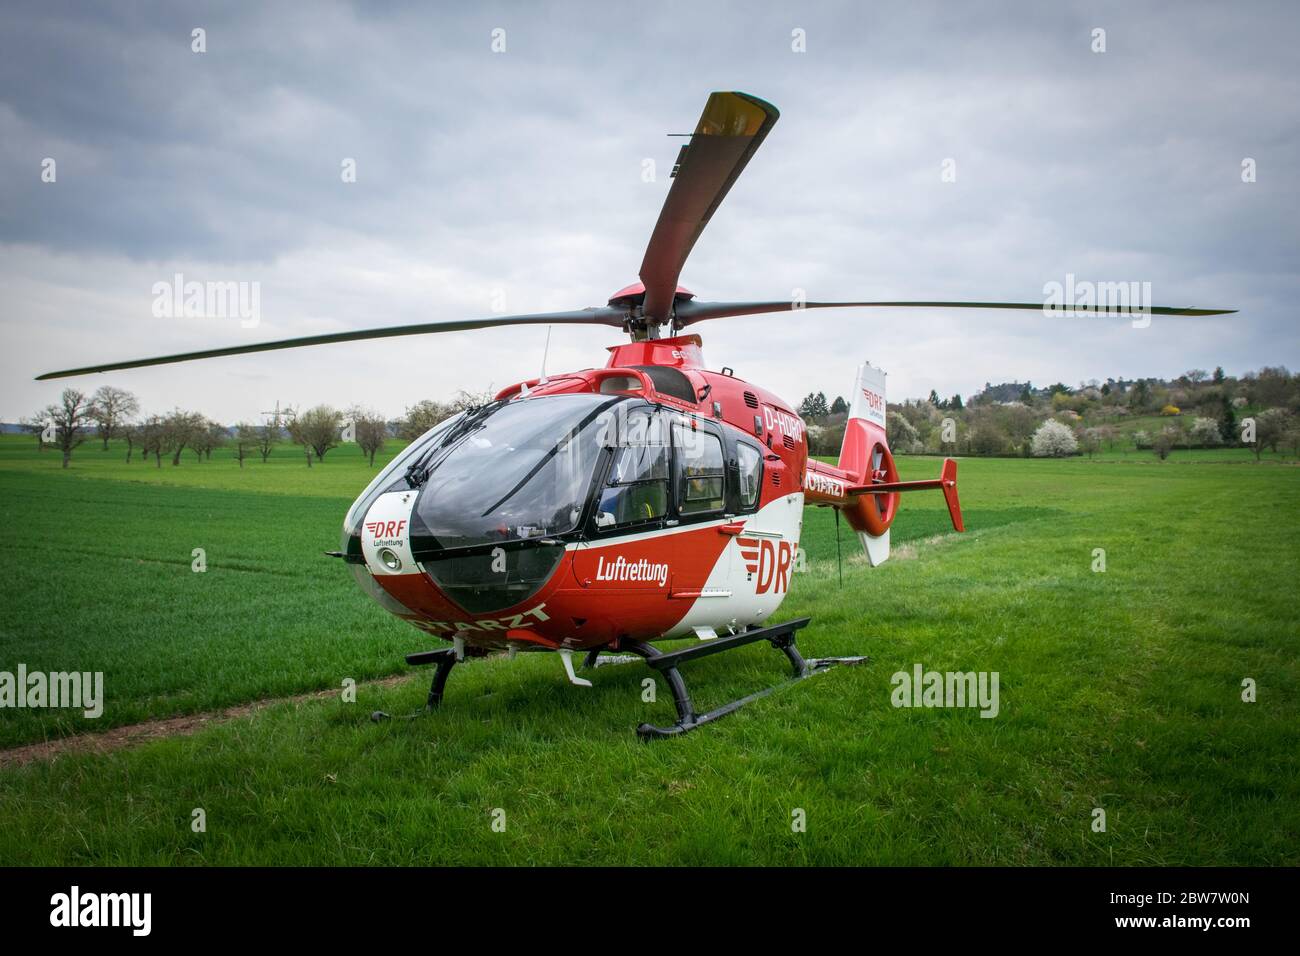 Rettungshubschrauber der DRF Luftrettung 'Christoph 41' mit der Kennung D-HDRQ auf einem Feld zur Unterstützung bei einem Verkehrsunfall Foto de stock